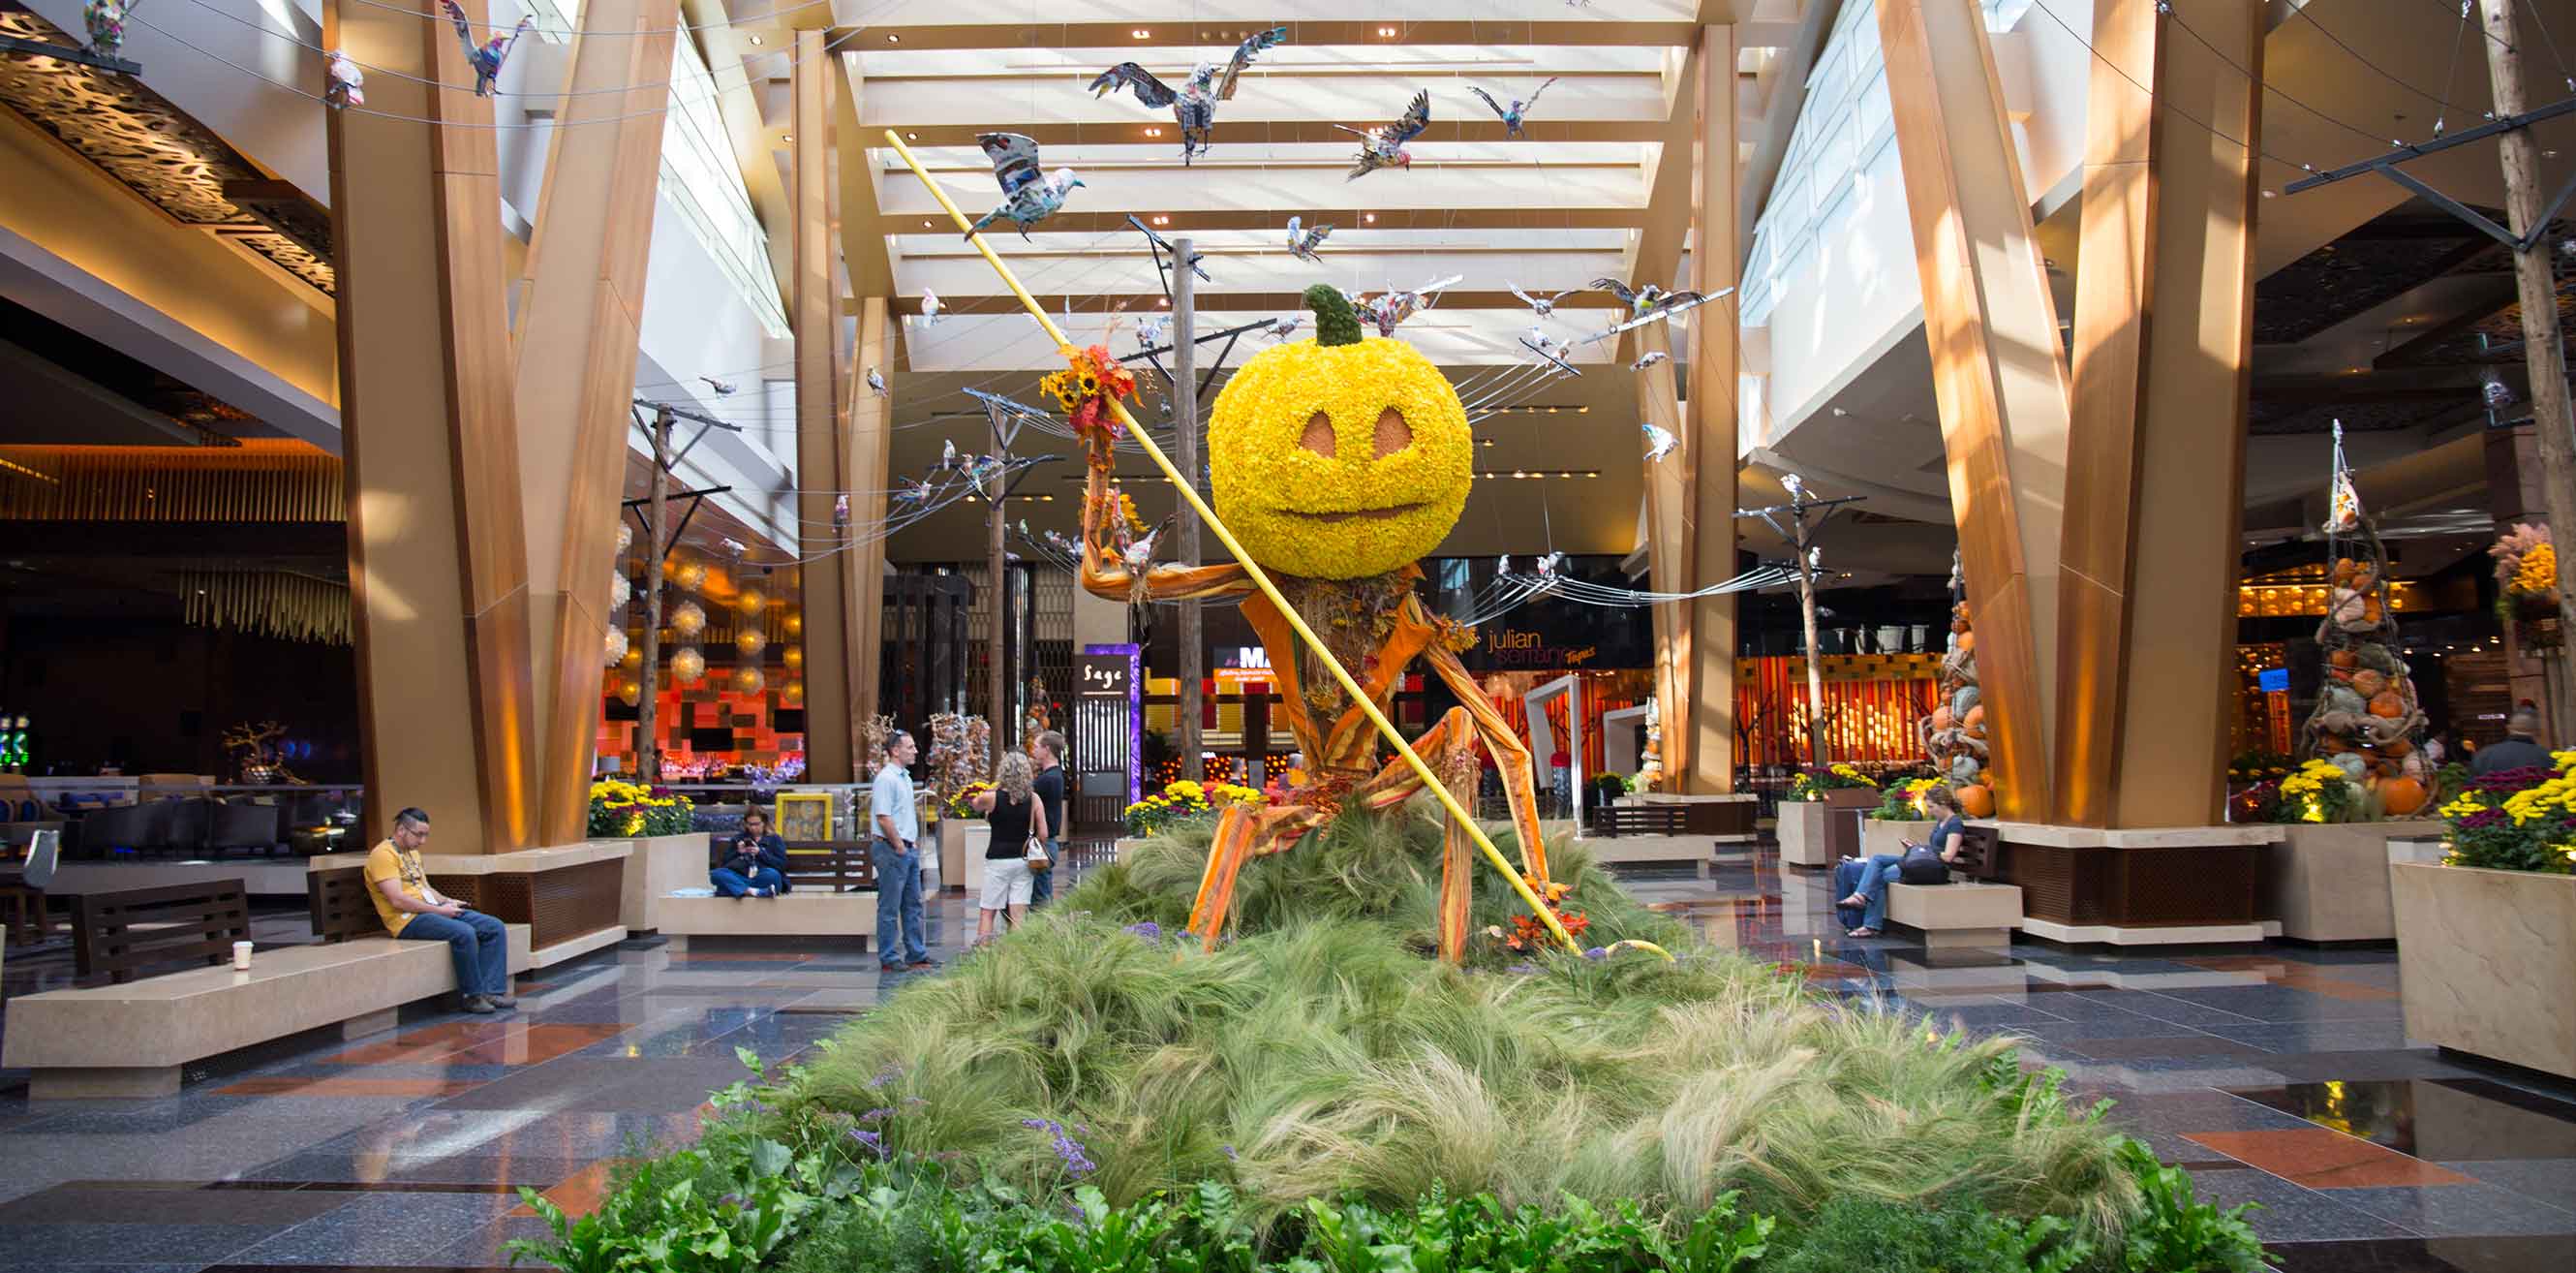 A pumpkin-headed figure for a Halloween themed installation